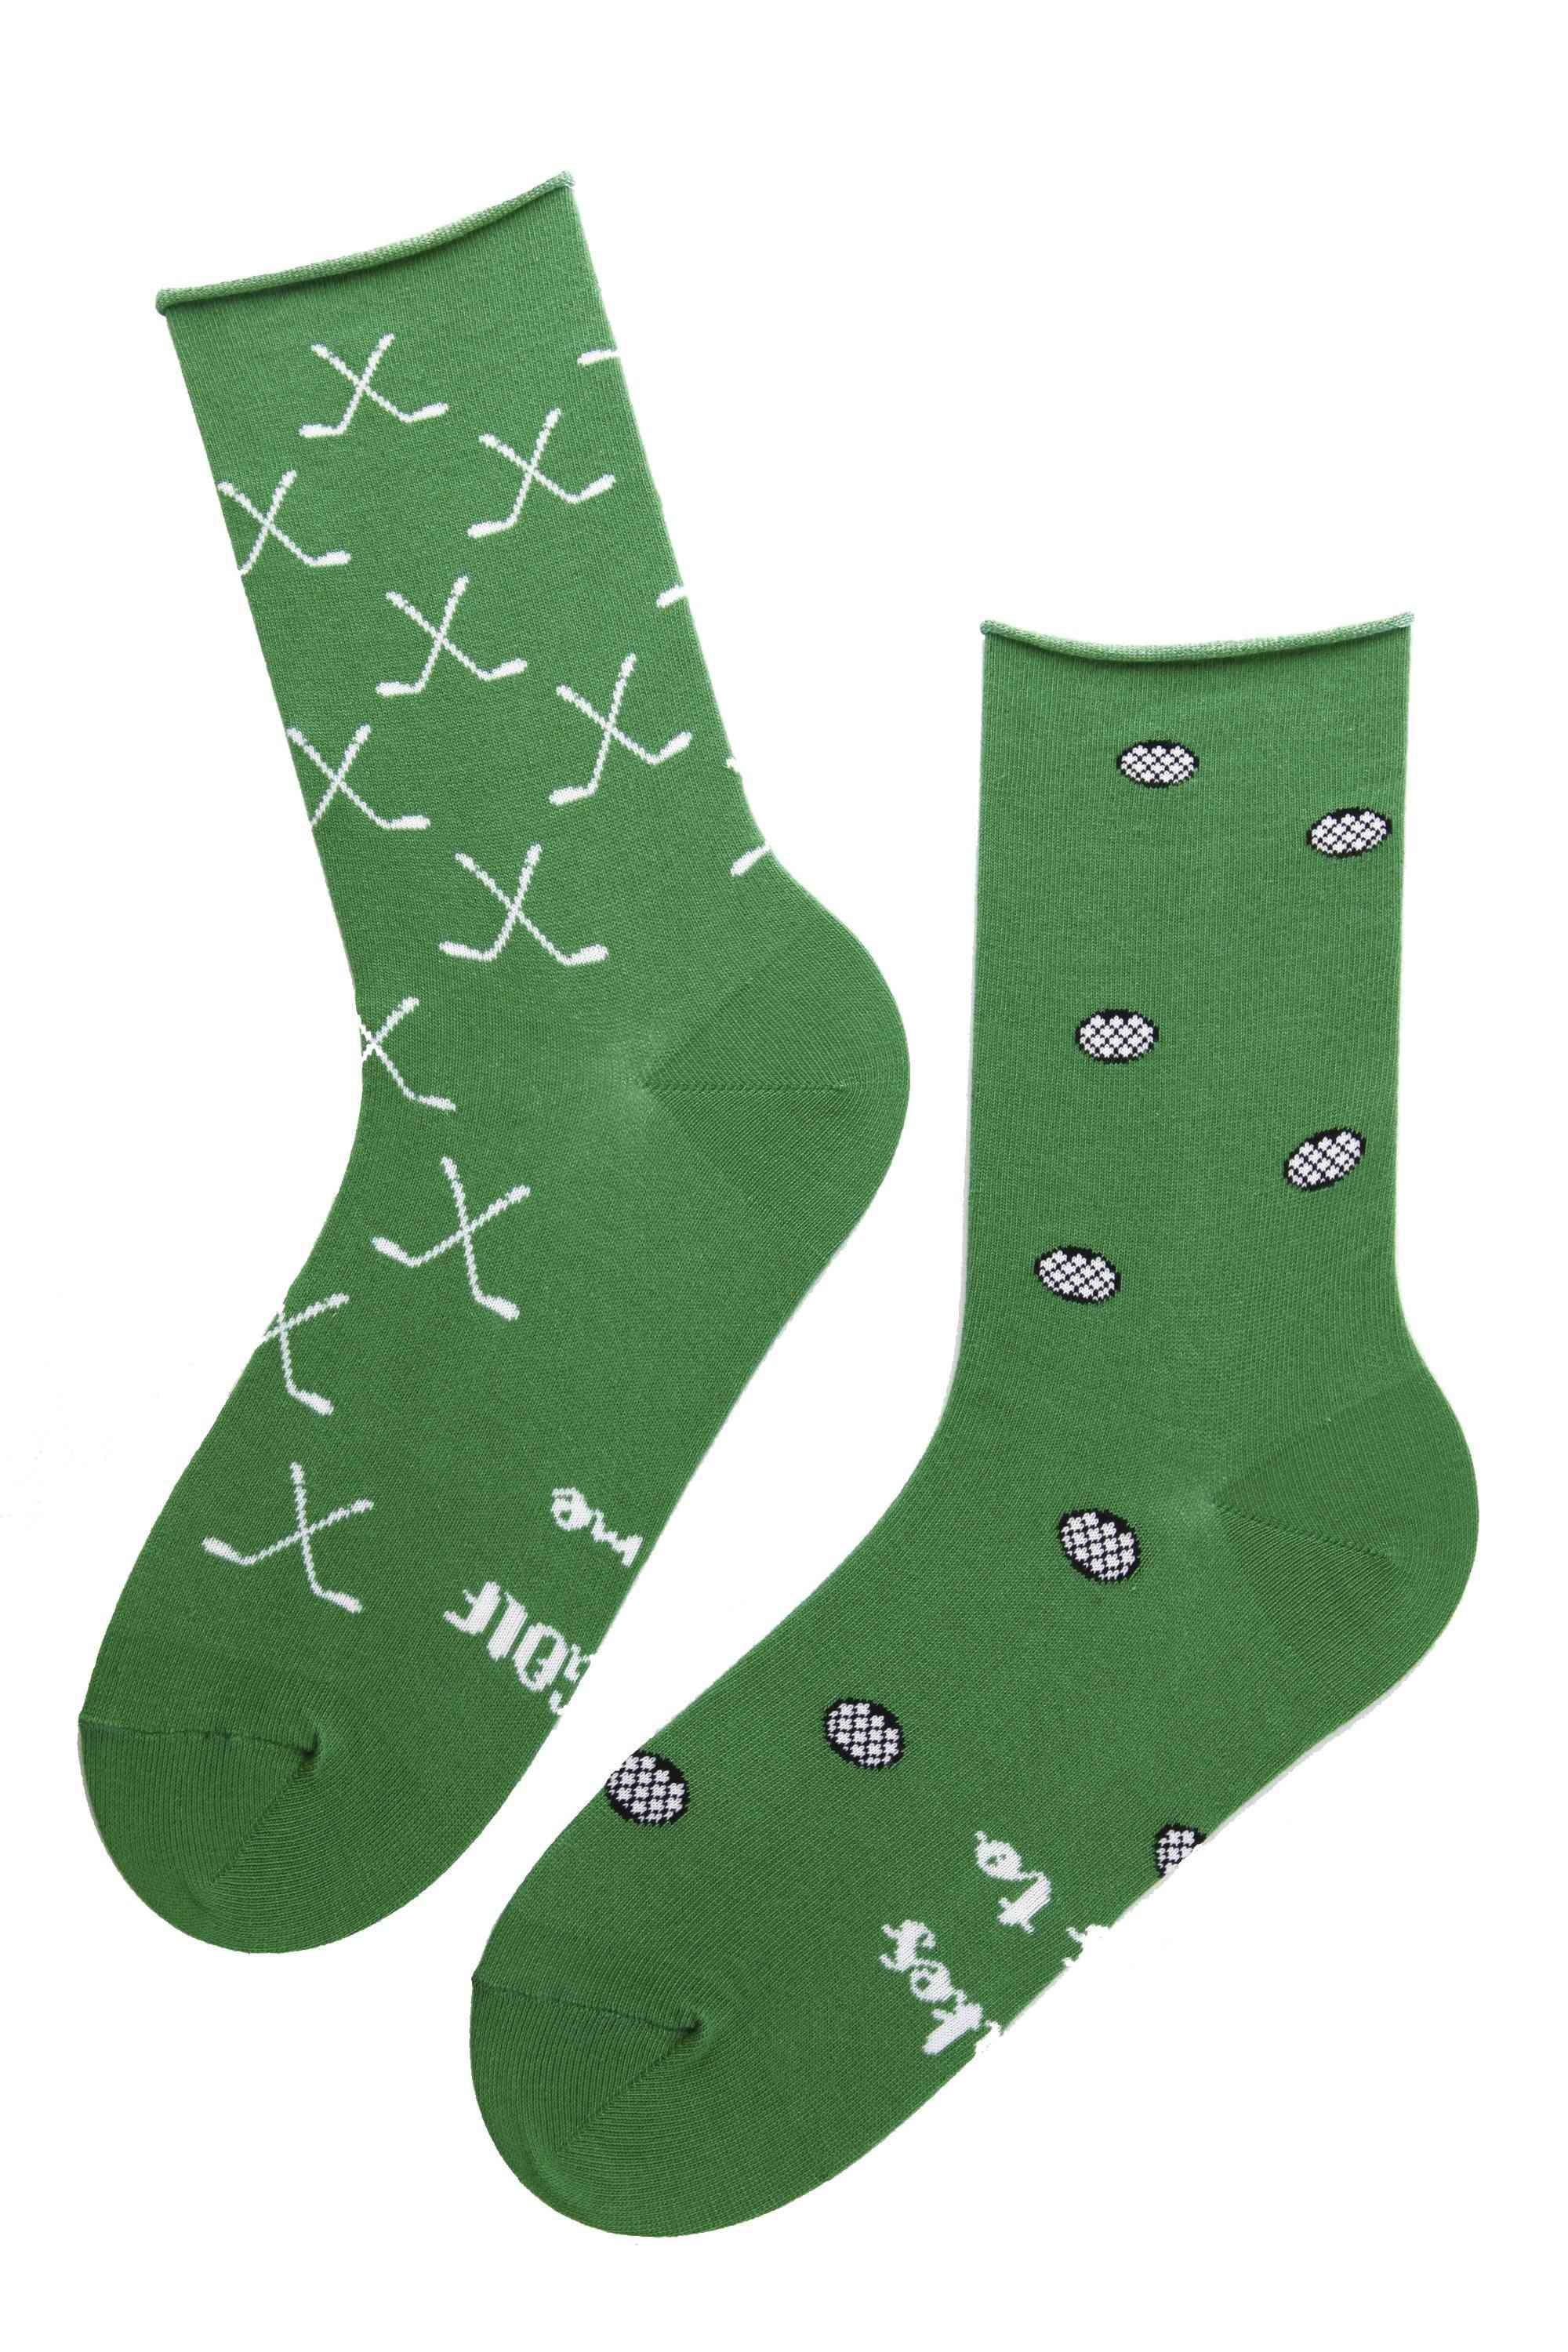 Dámske bavlnené ponožky so vzorom golfovej palice a loptičky